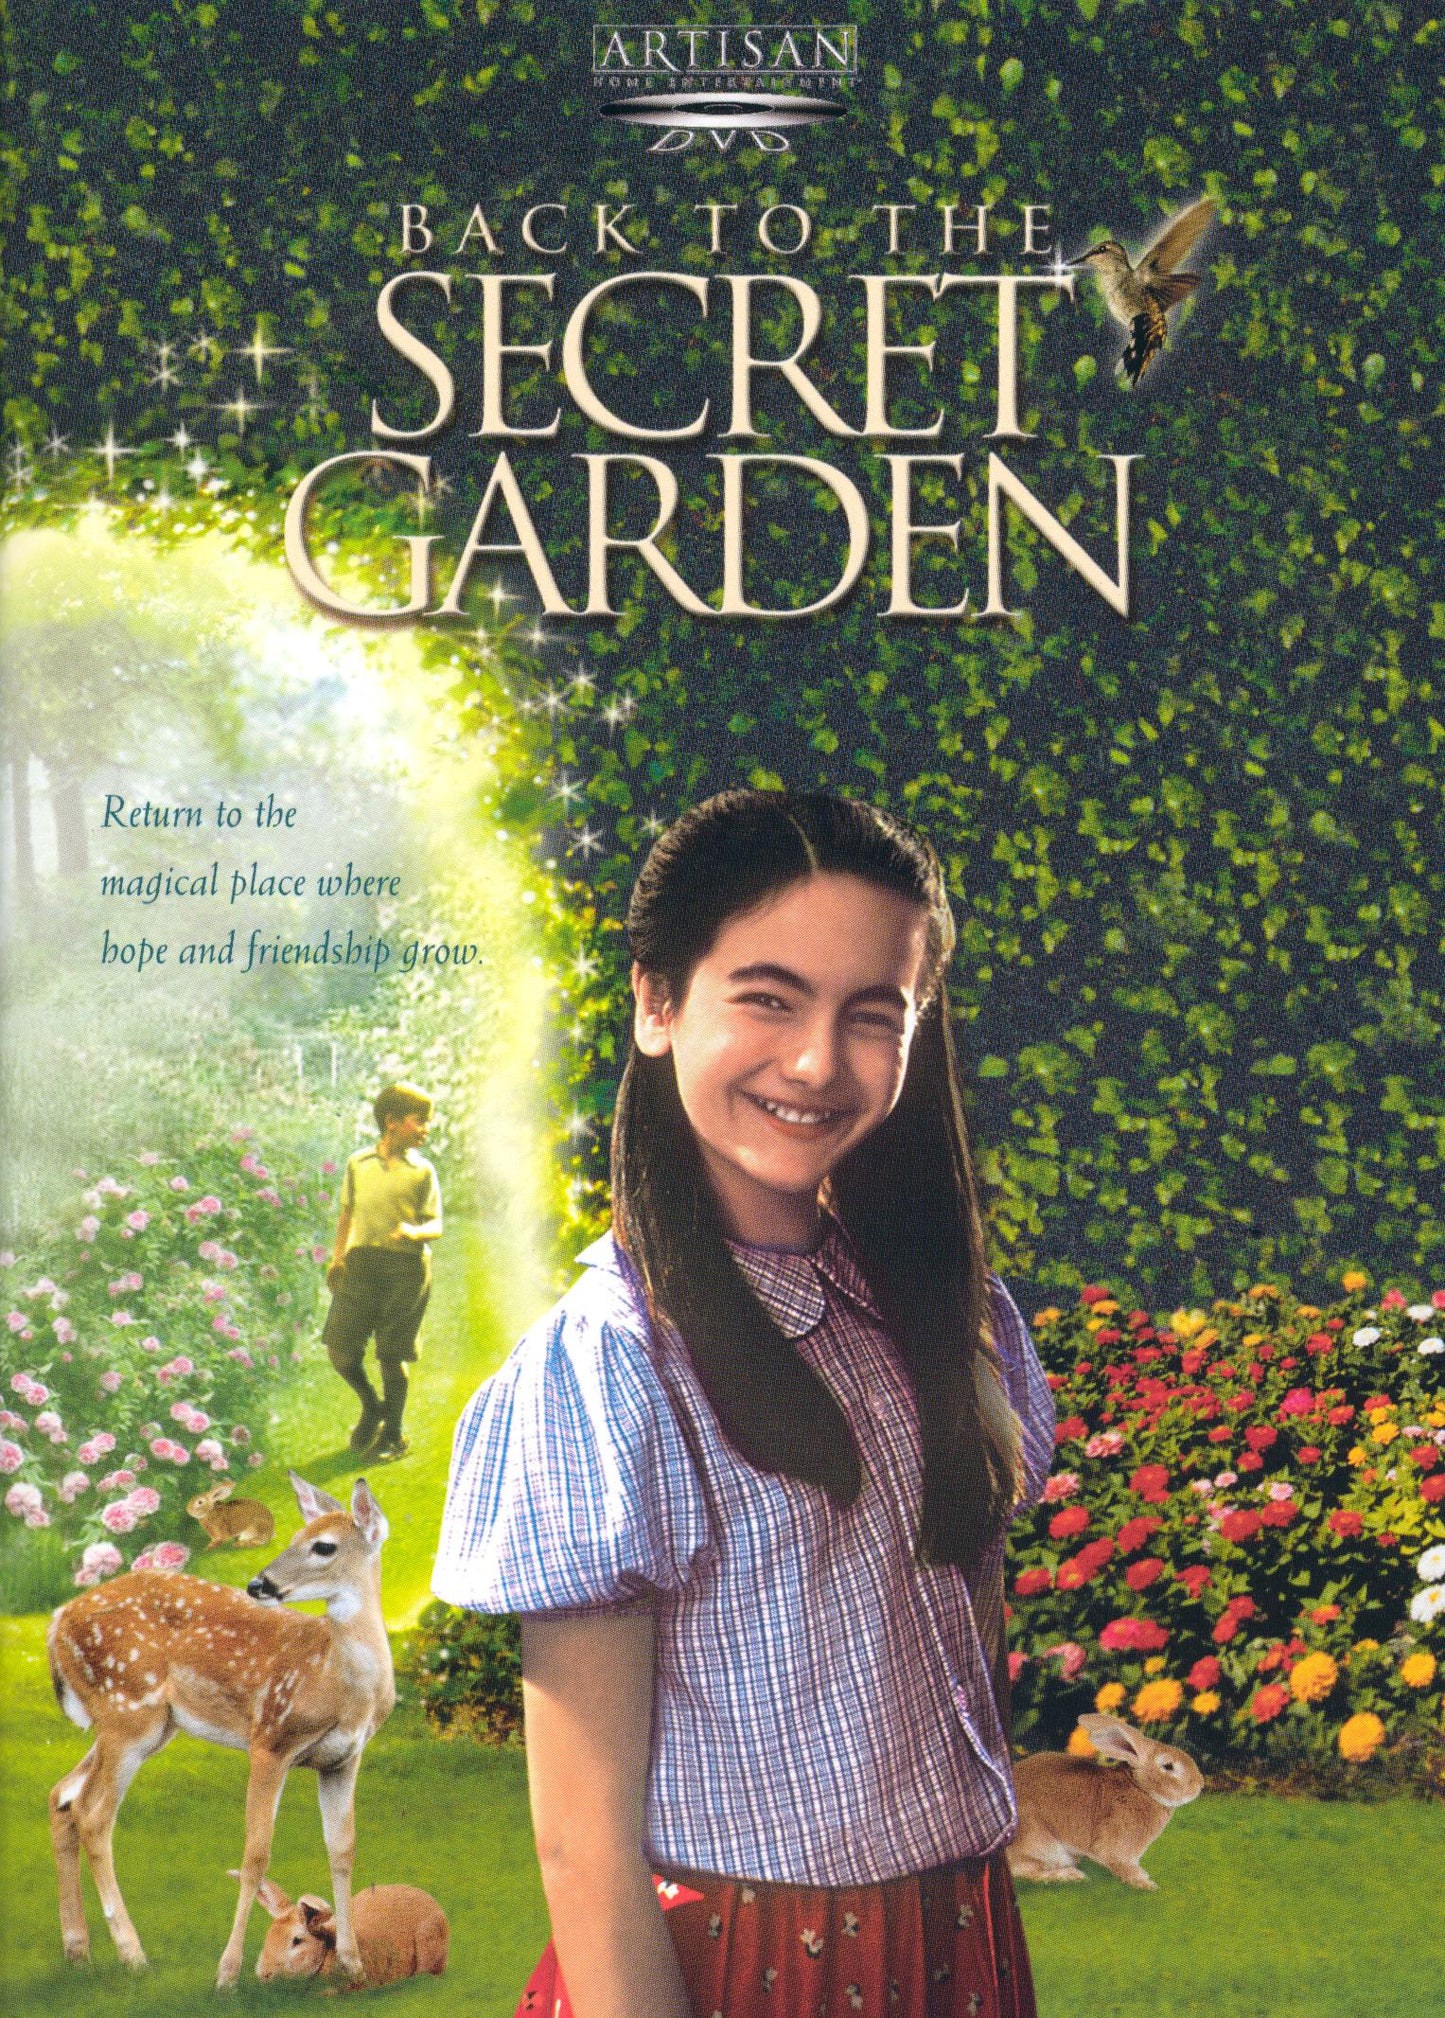 Back to the Secret Garden cover art